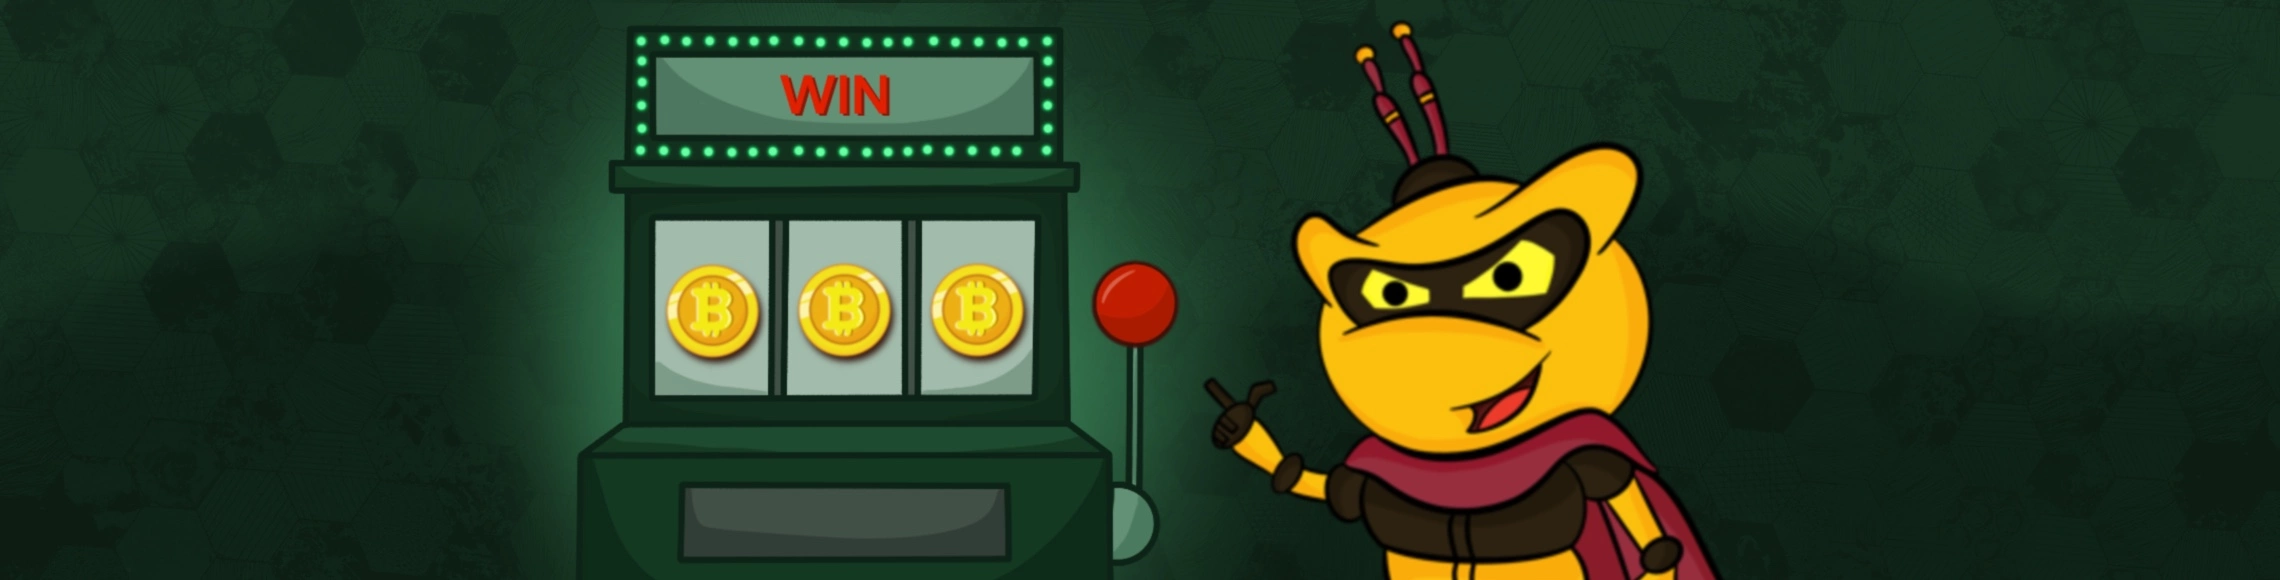 Was ist neu an Bitcoin Casino Anbieter